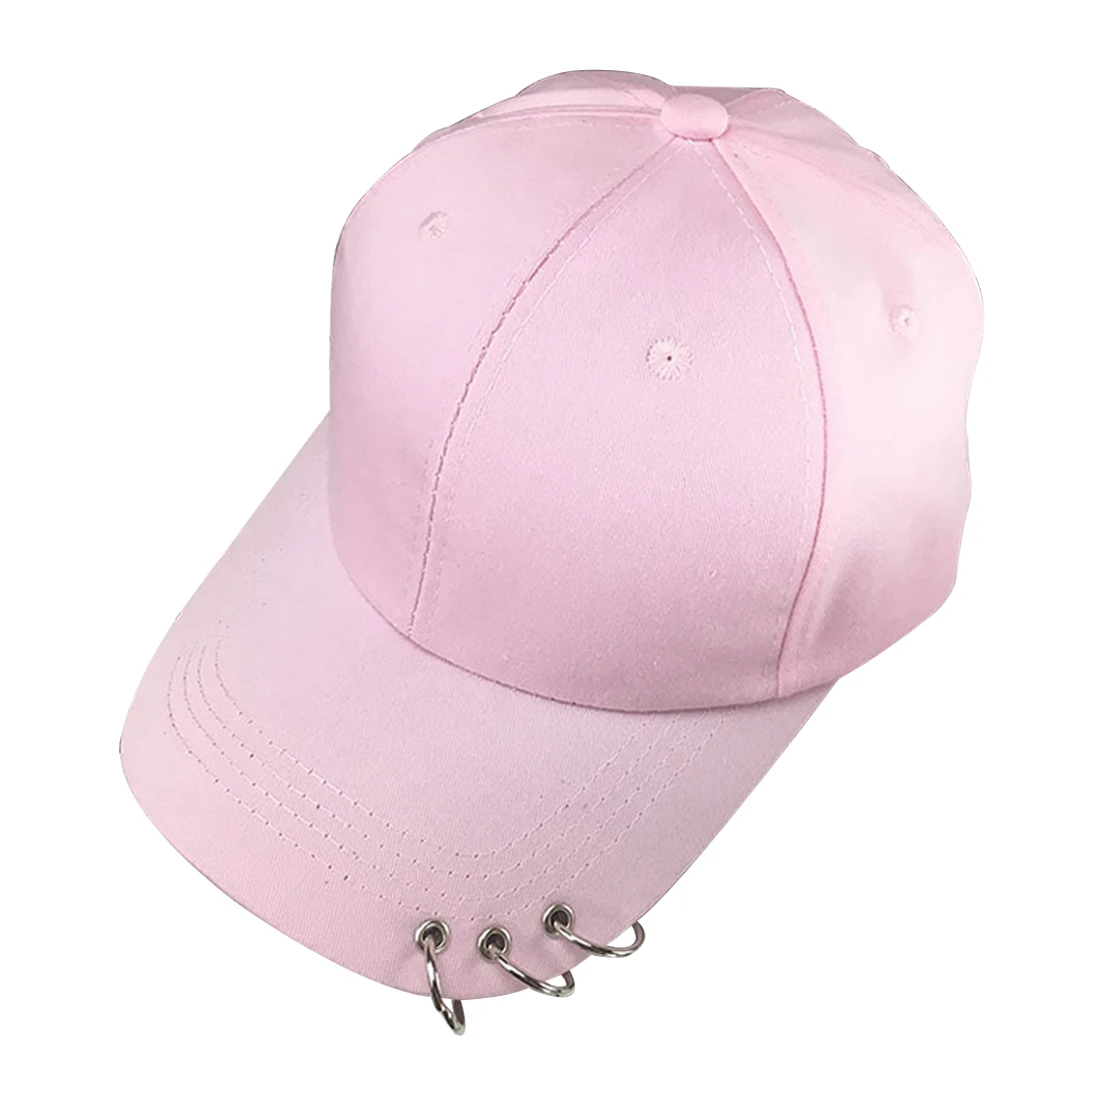 Summe охотничья шляпа хлопок утка шляпа мужчины и женщины Спорт Мода Солнце Хип Хоп шляпы Повседневный стиль Casquette - Цвет: Розовый